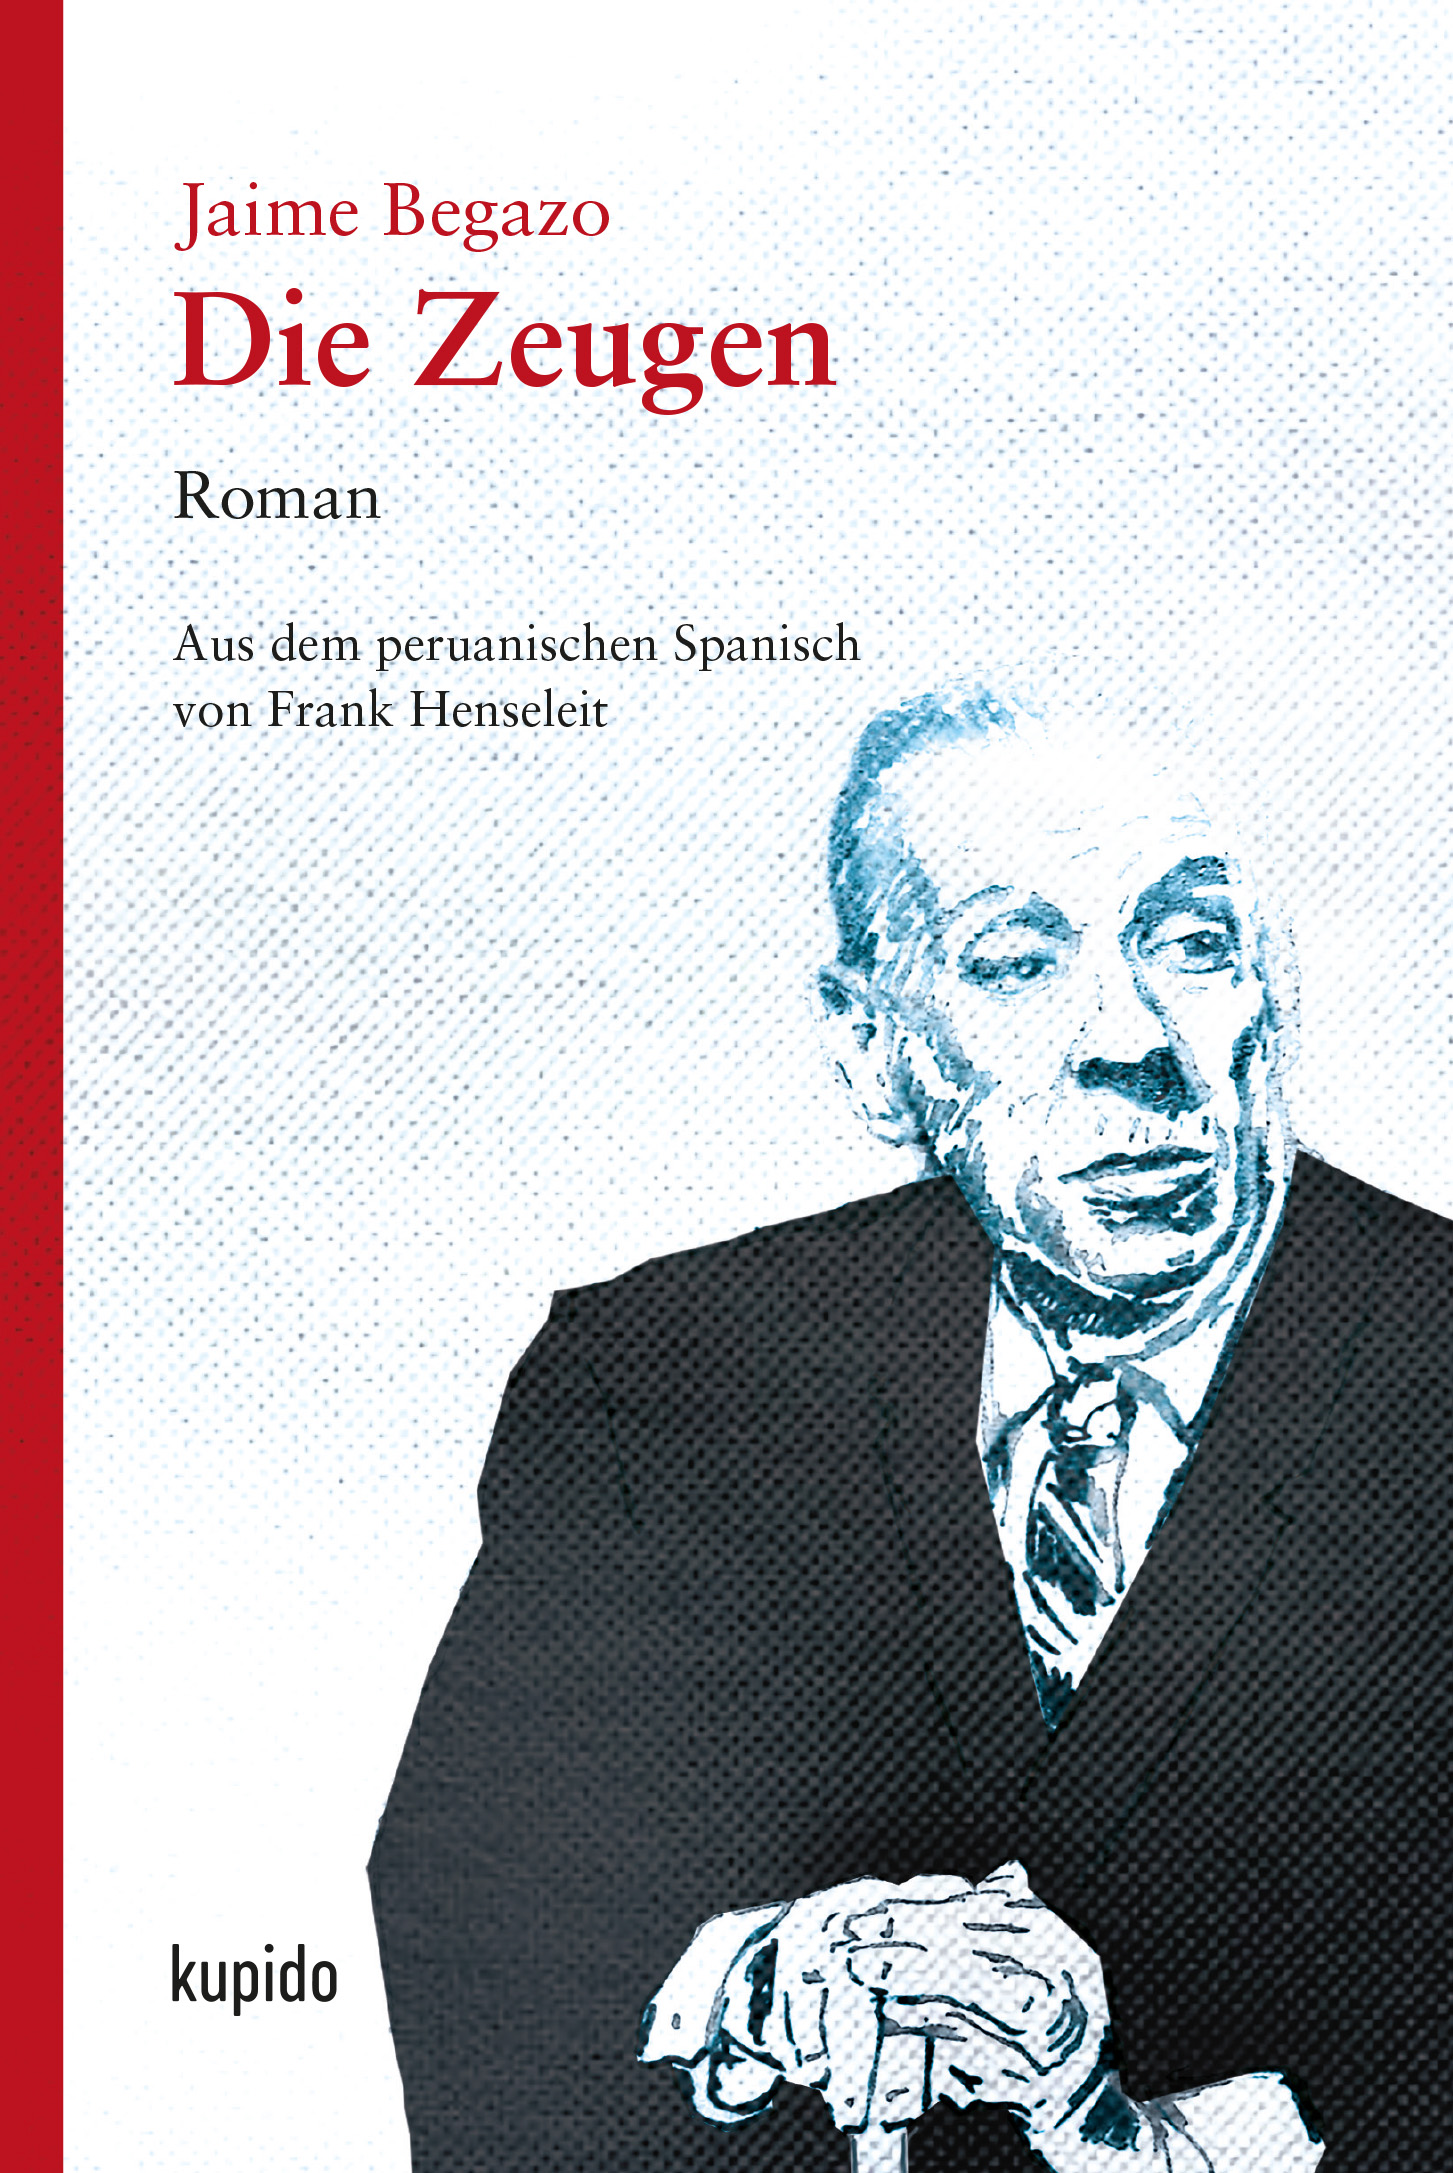 Cover, Kupido Verlag